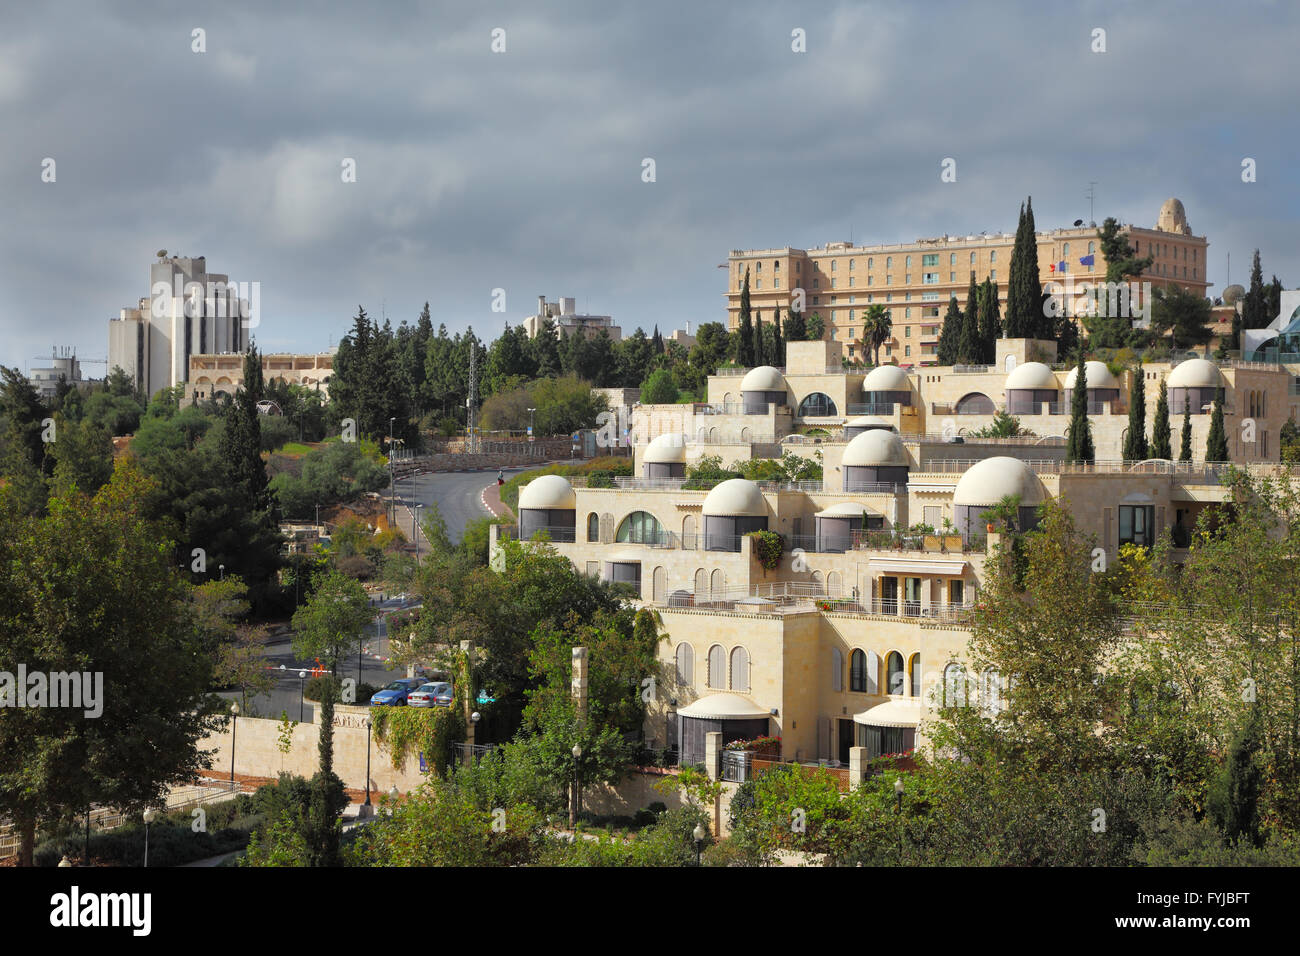 La capitale dello Stato di Israele - Gerusalemme, hotel King David. Foto Stock